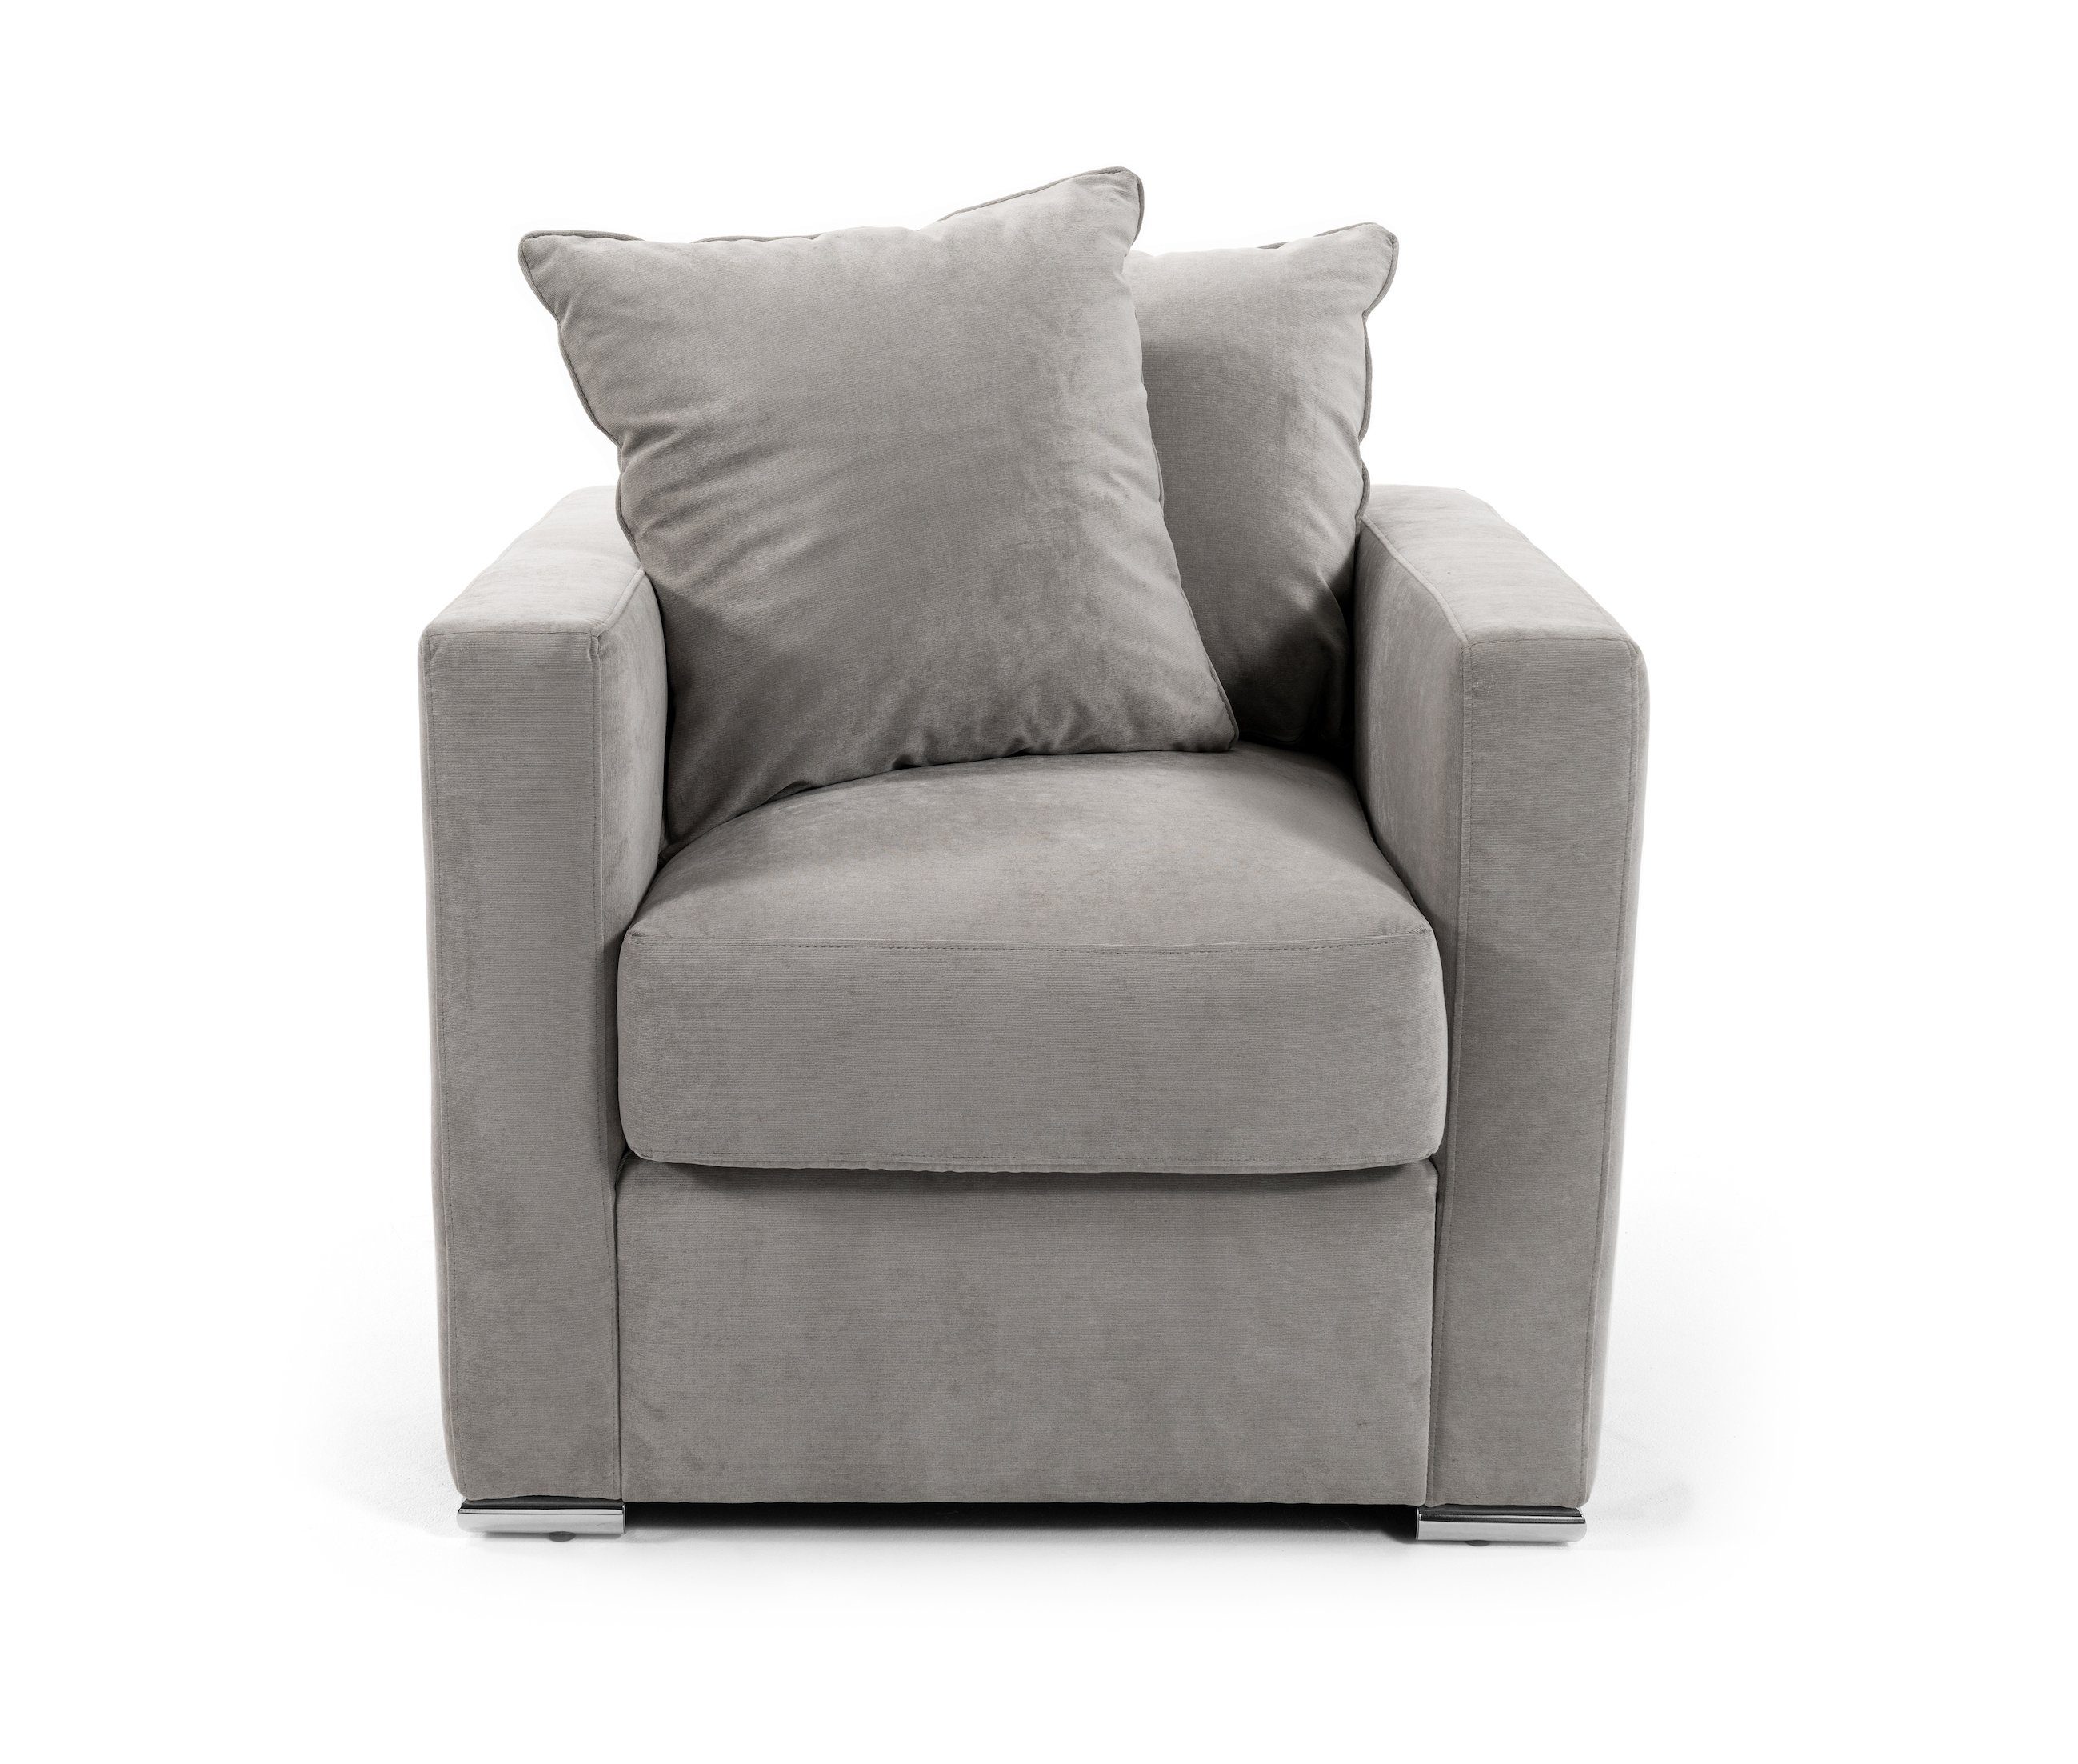 AMARIS Elements Cocktailsessel 80x85cm, perfekte 'Paul' Die Ergänzung unseren Samt zu Wohnzimmer mit Sessel od. Loungesessel Stoff-Bezug Grau Sofas